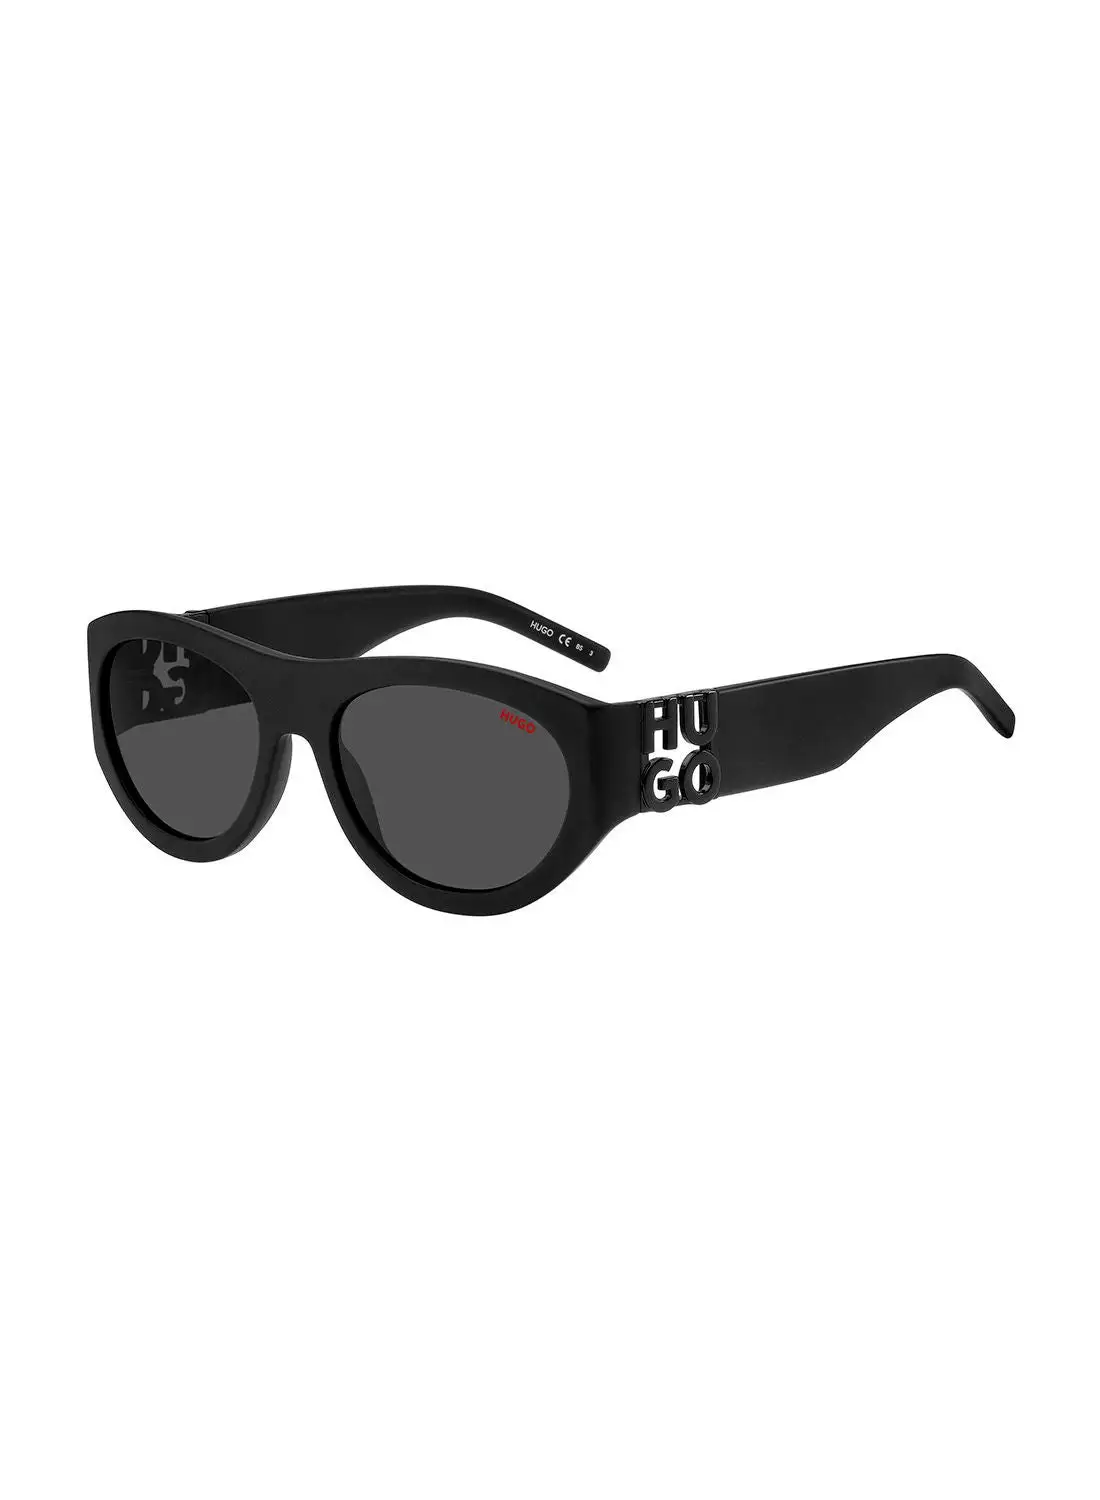 هوغو نظارة شمسية مستطيلة للحماية من الأشعة فوق البنفسجية للرجال - Hg 1254/S أسود 57 - مقاس العدسة: 57 ملم